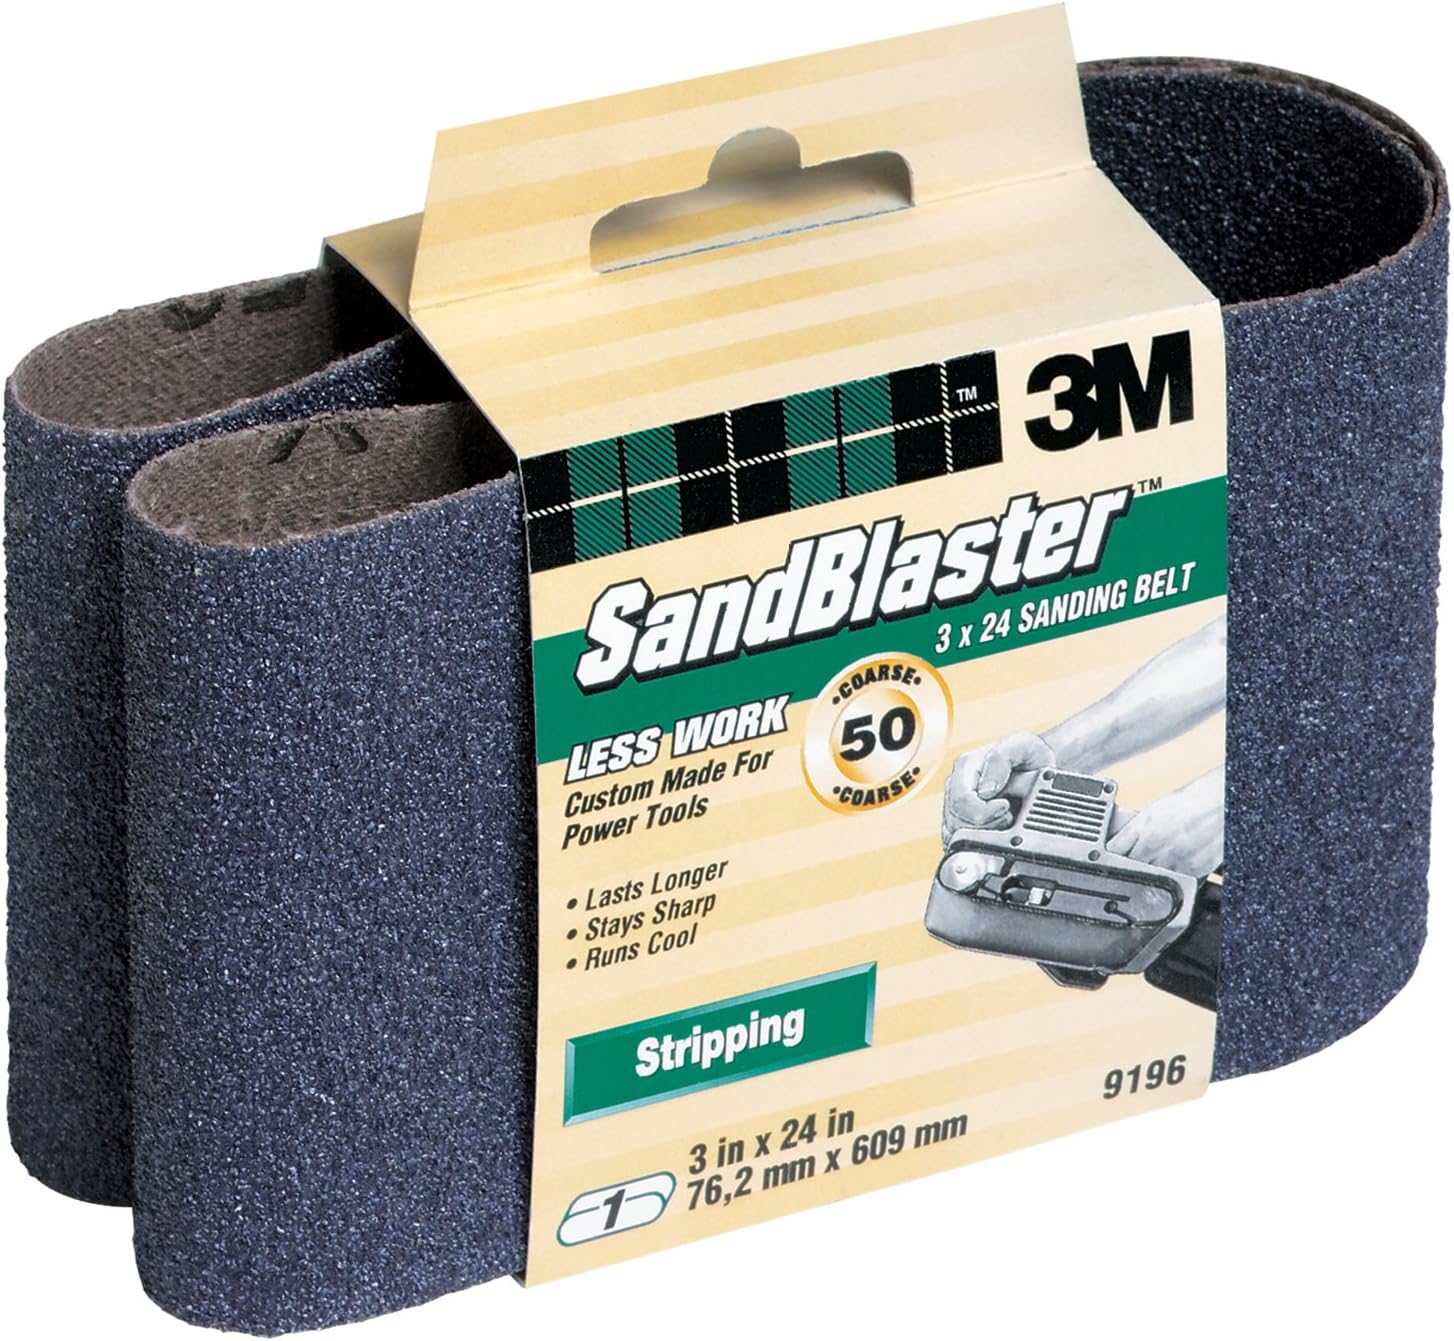 Sandblaster Sanding Belt,9196na,3